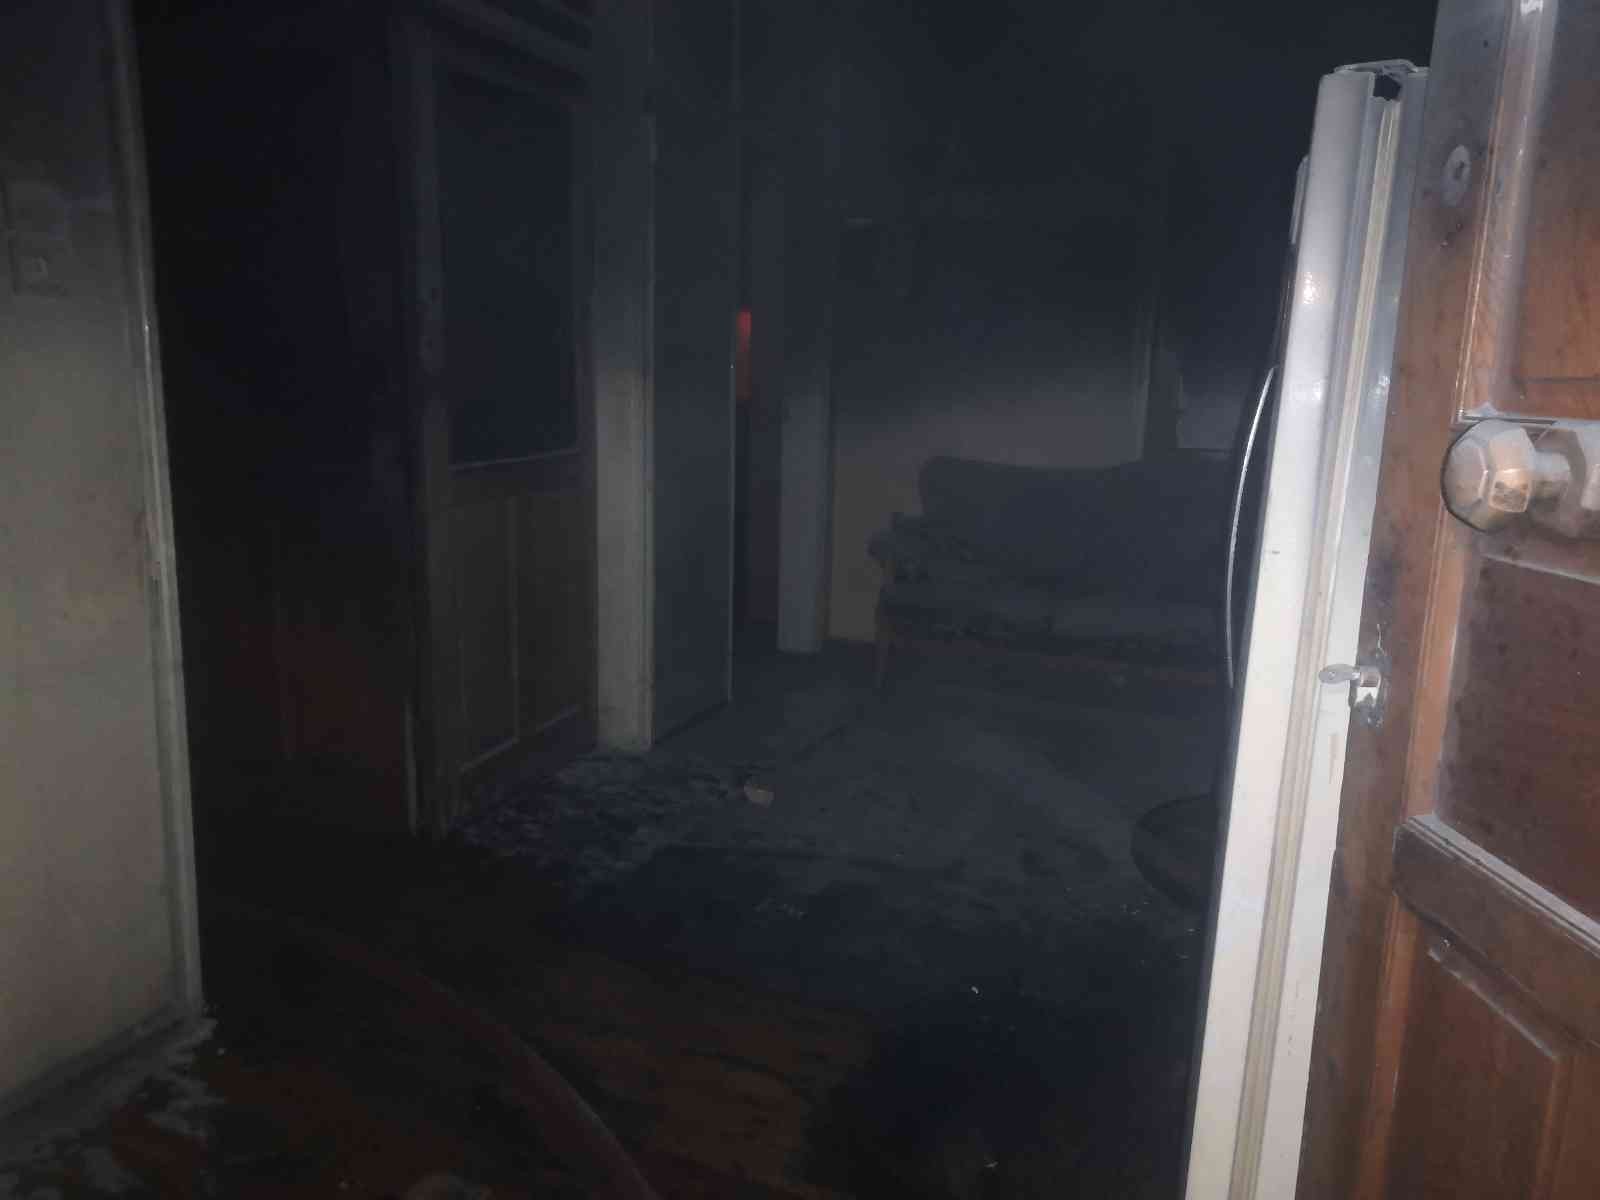 Ordu’da evde sobadan çıkan yangında 2 kişi dumandan etkilendi #ordu